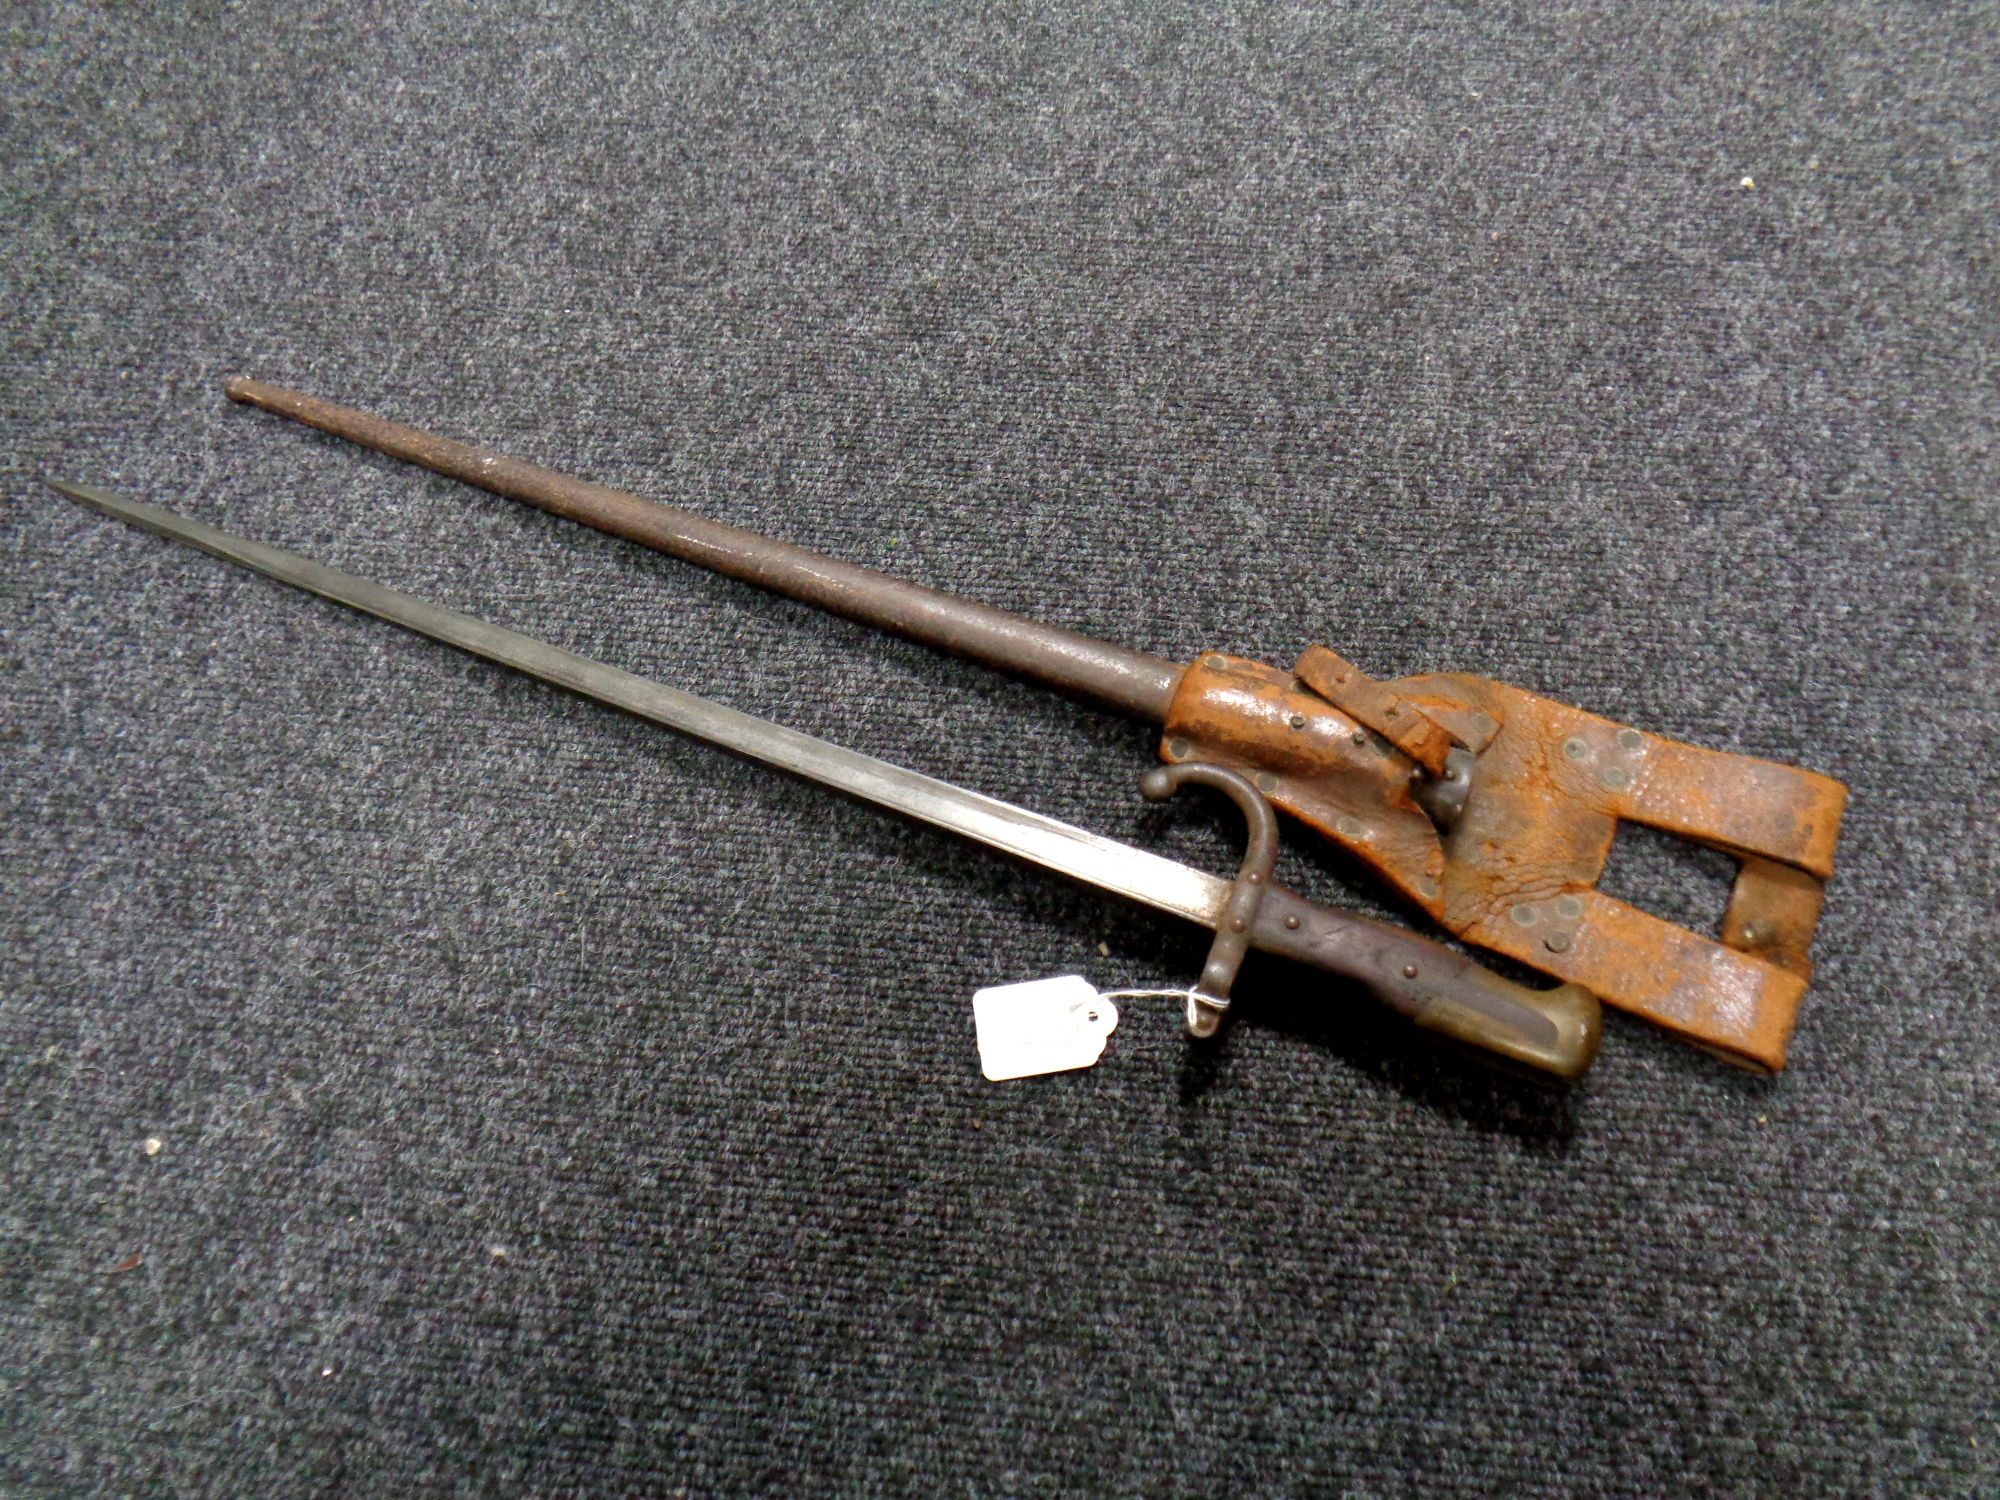 A French World War I bayonet in scabbard